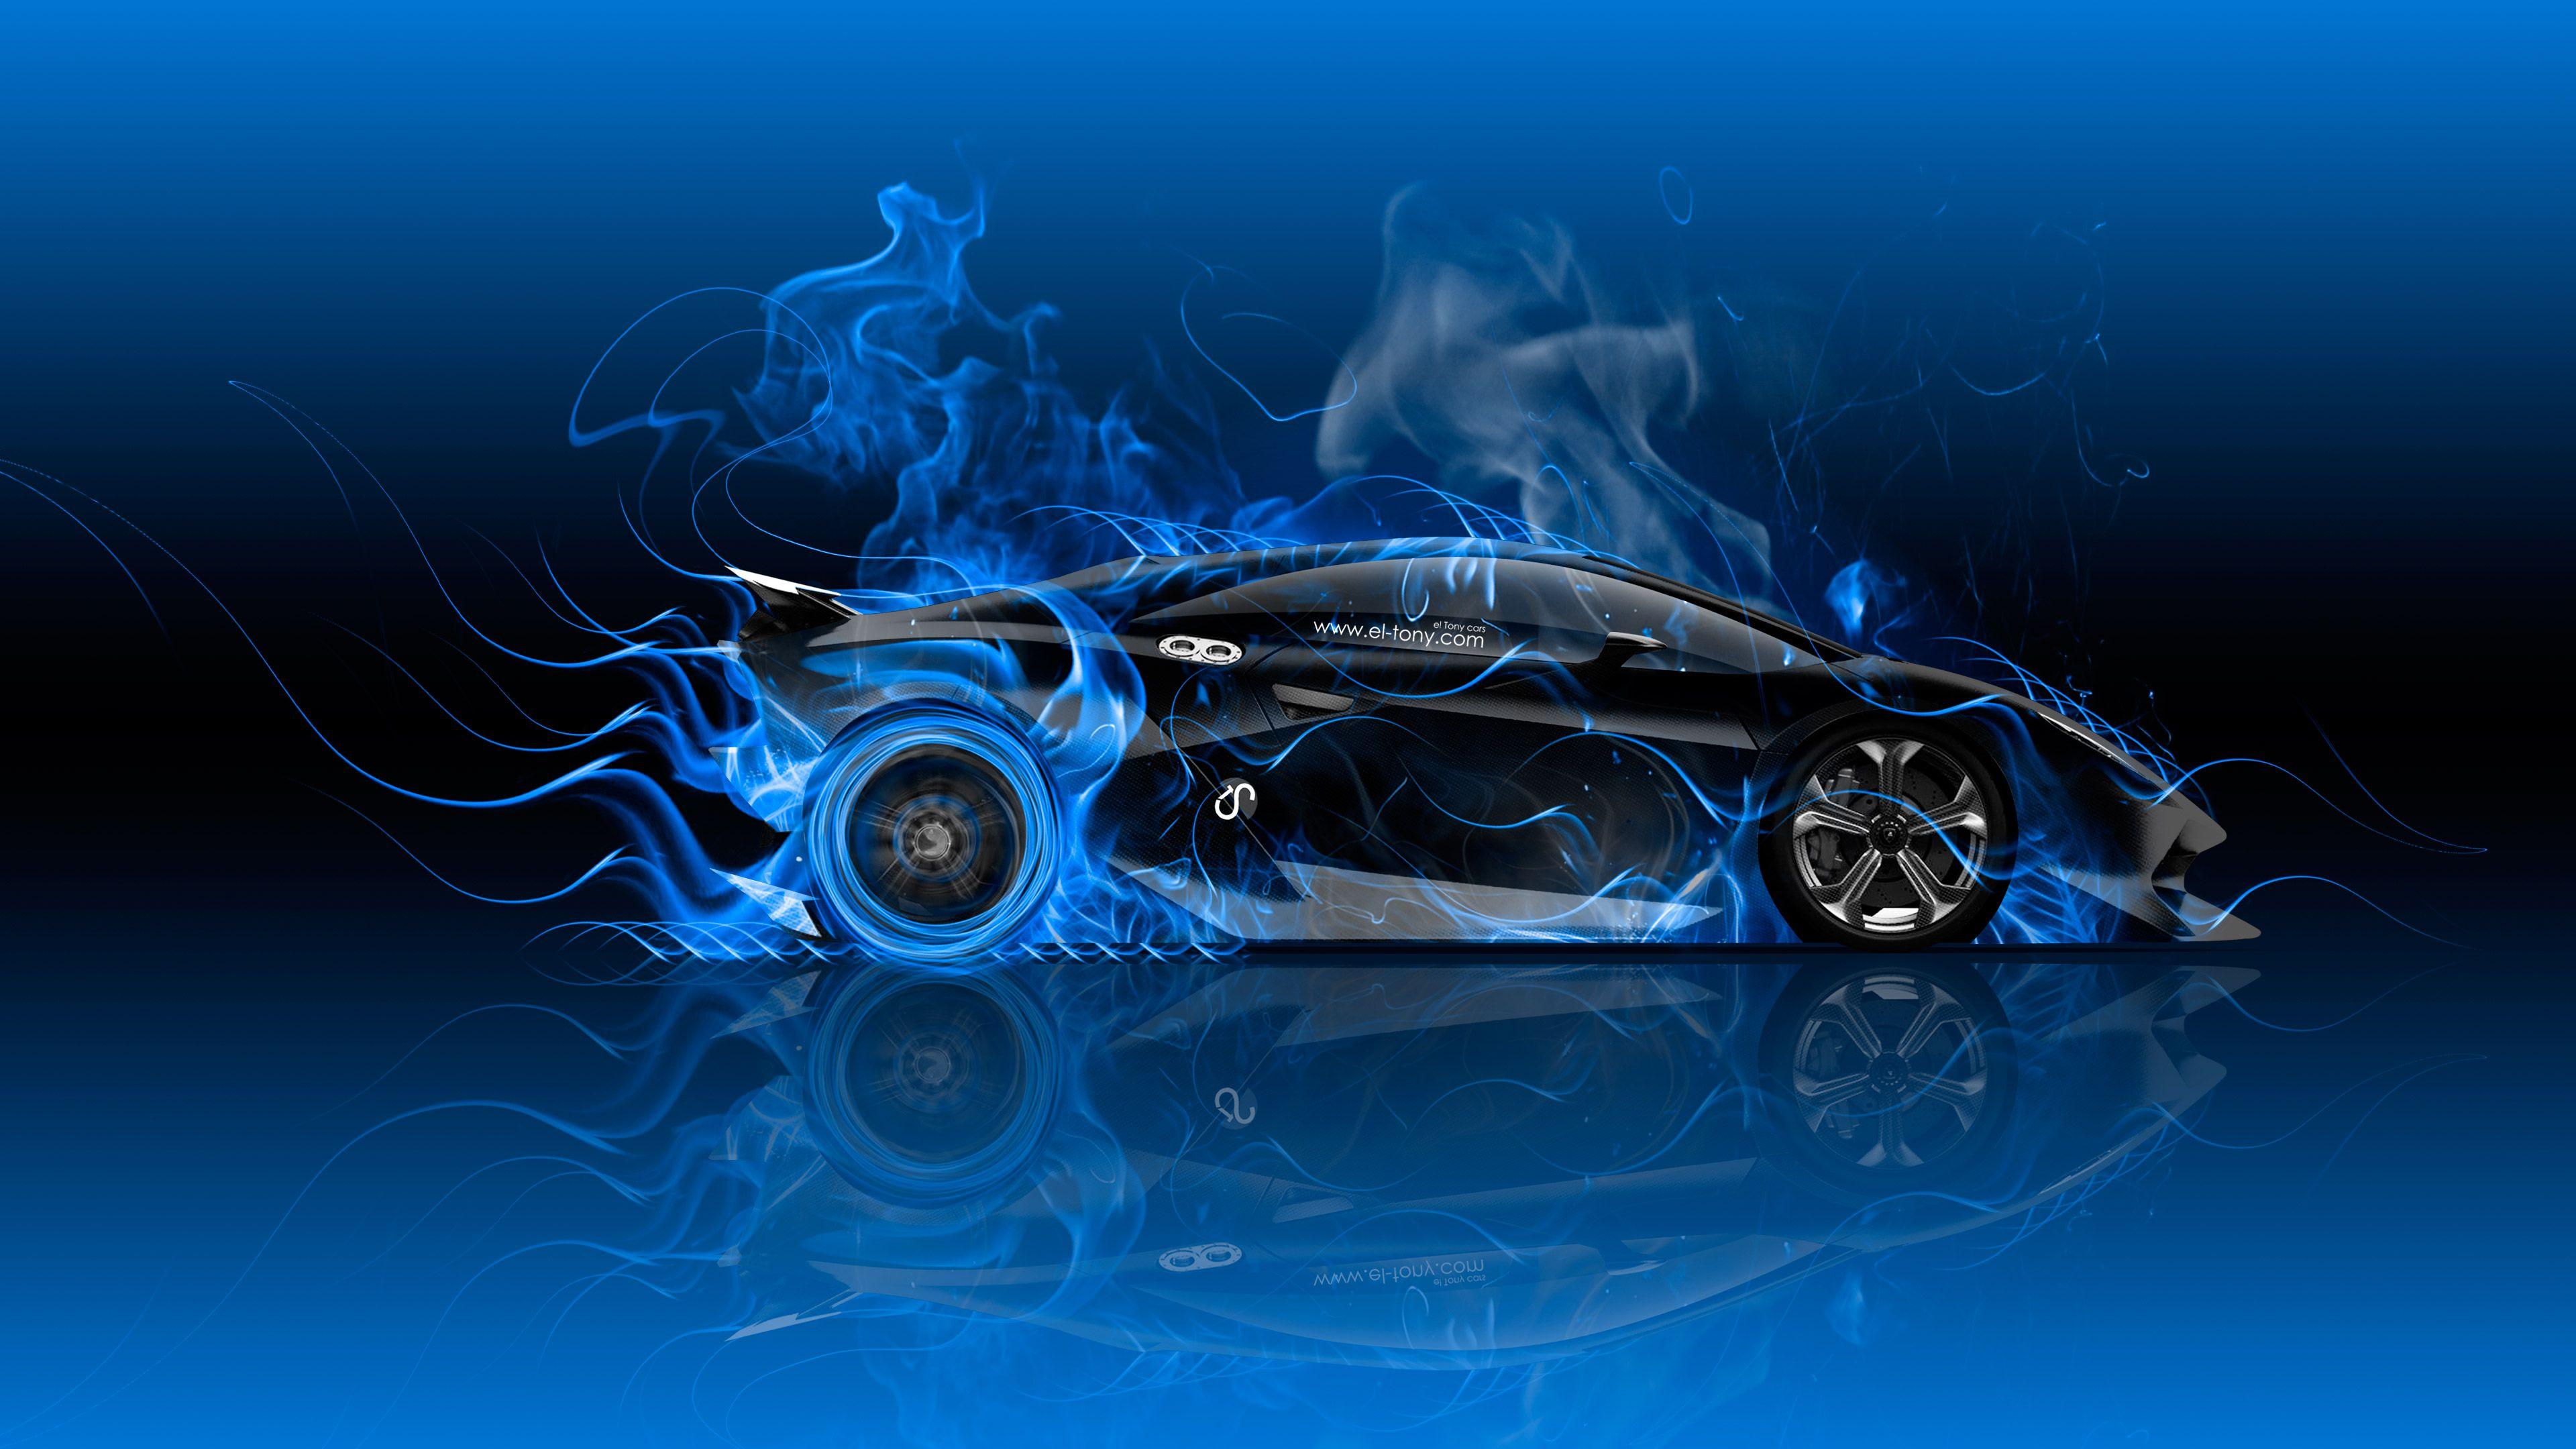 Blue Fire Lamborghini Wallpapers - Top Free Blue Fire Lamborghini ...